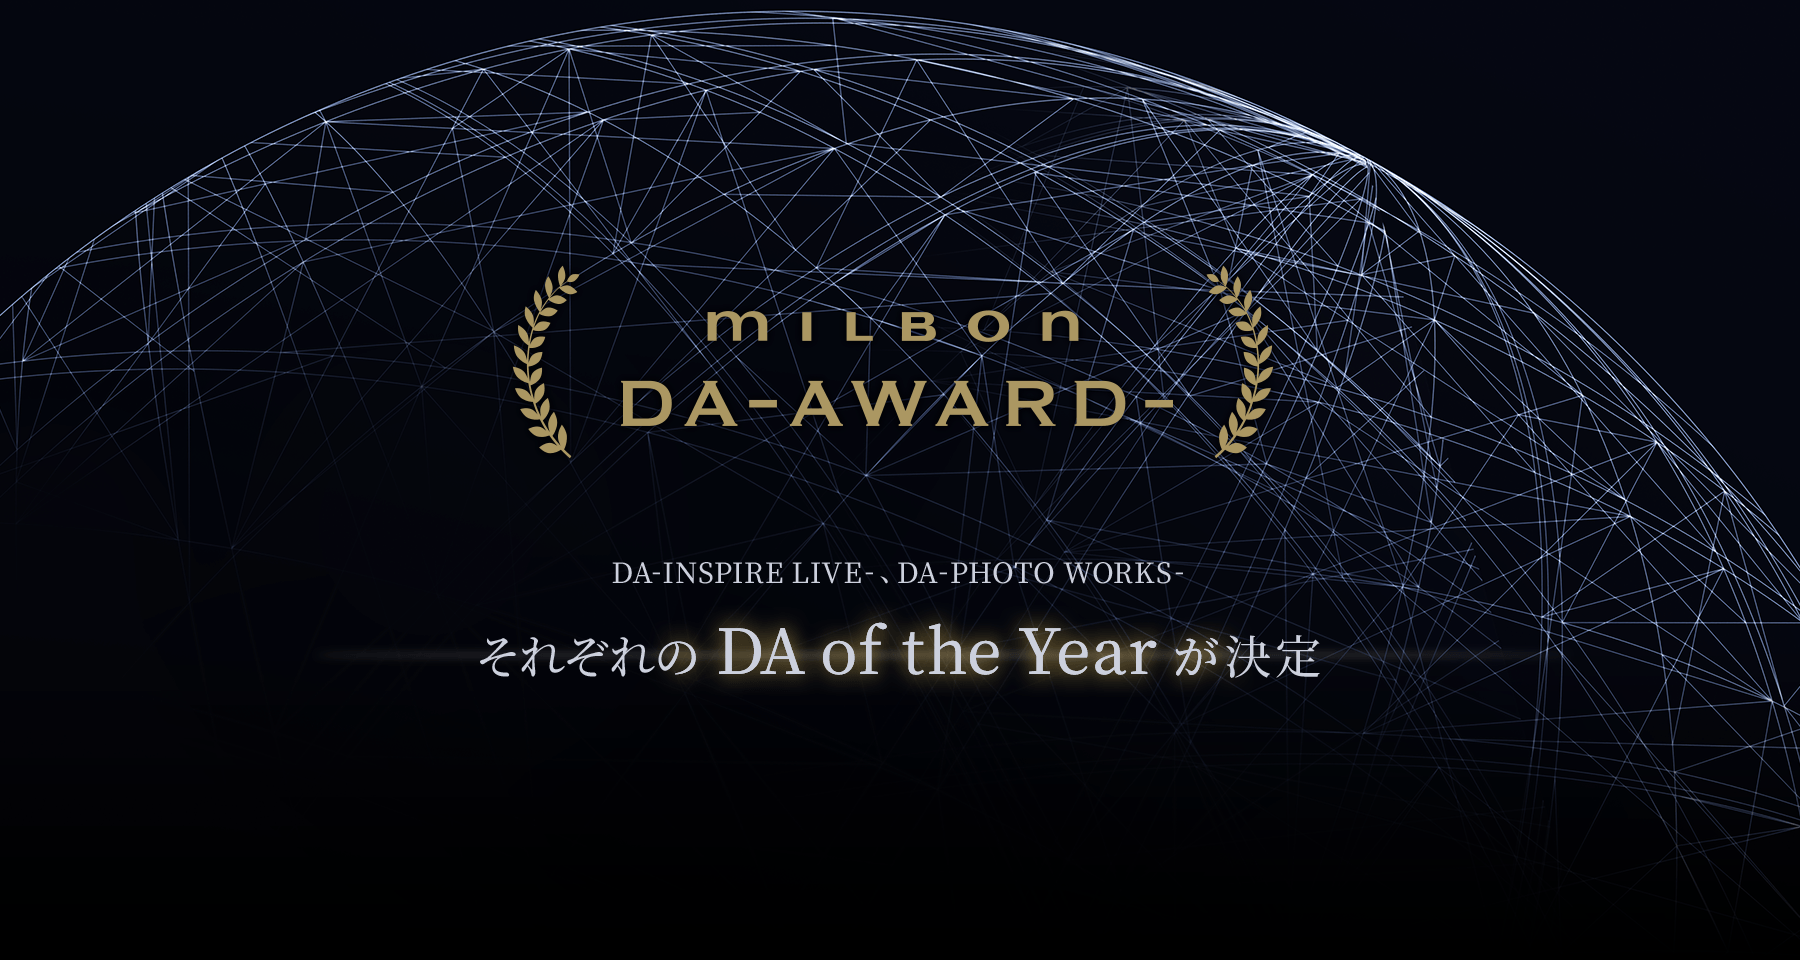 MILBON DA-AWARD- DA-INSPIRE LIVE-、DA -PHOTO WORKS- それぞれのDA of the Yearが決定